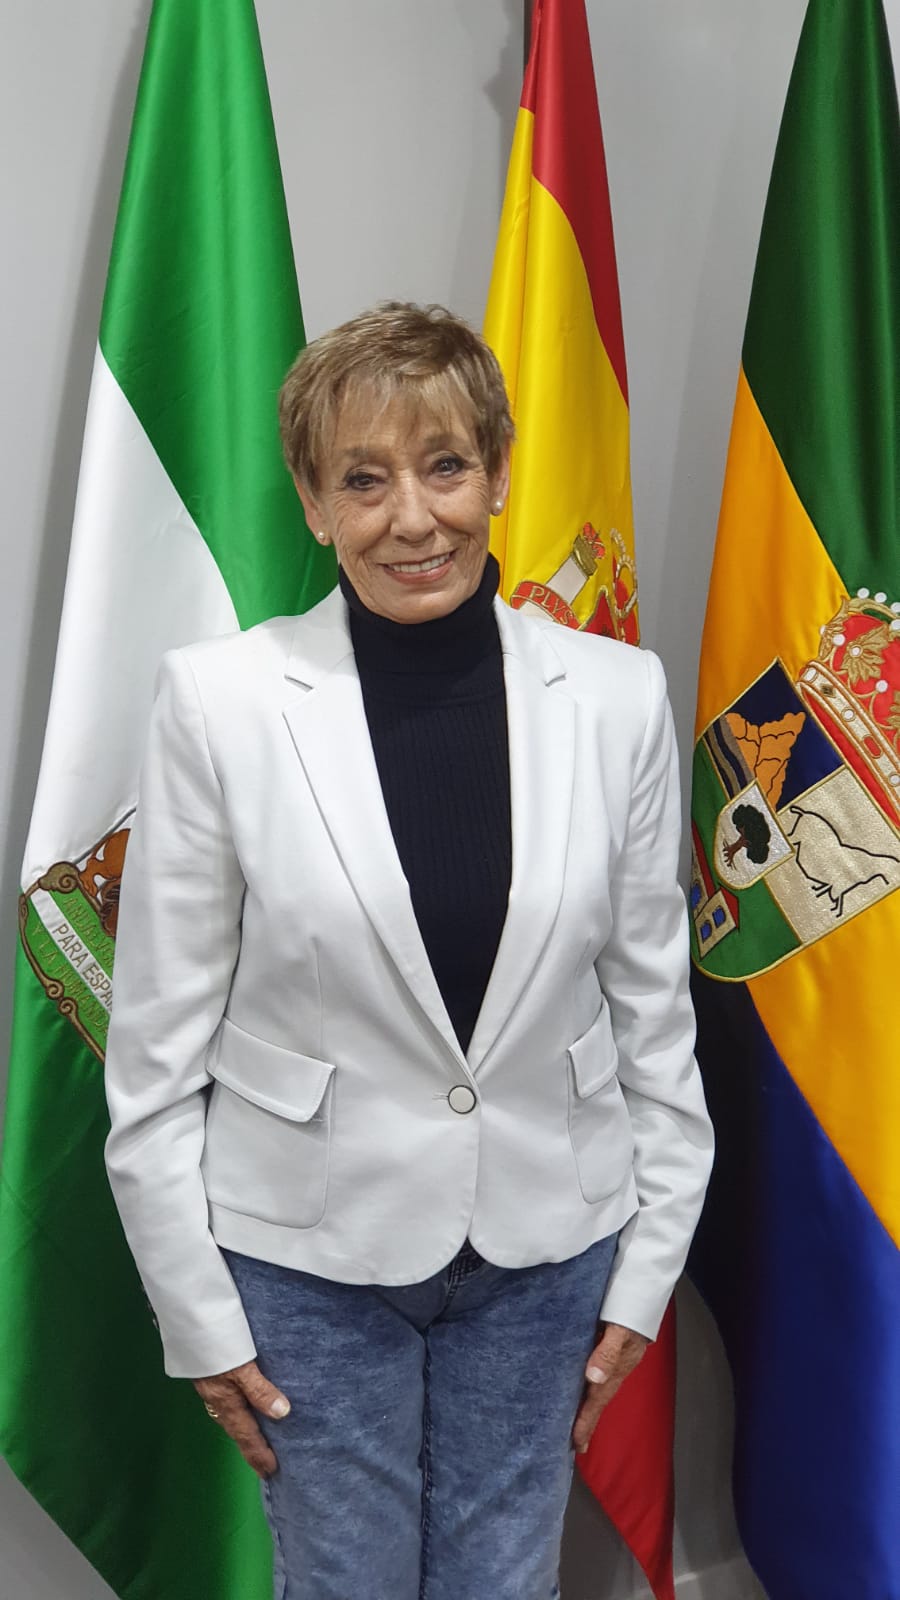 Maria Rebaque Villazala